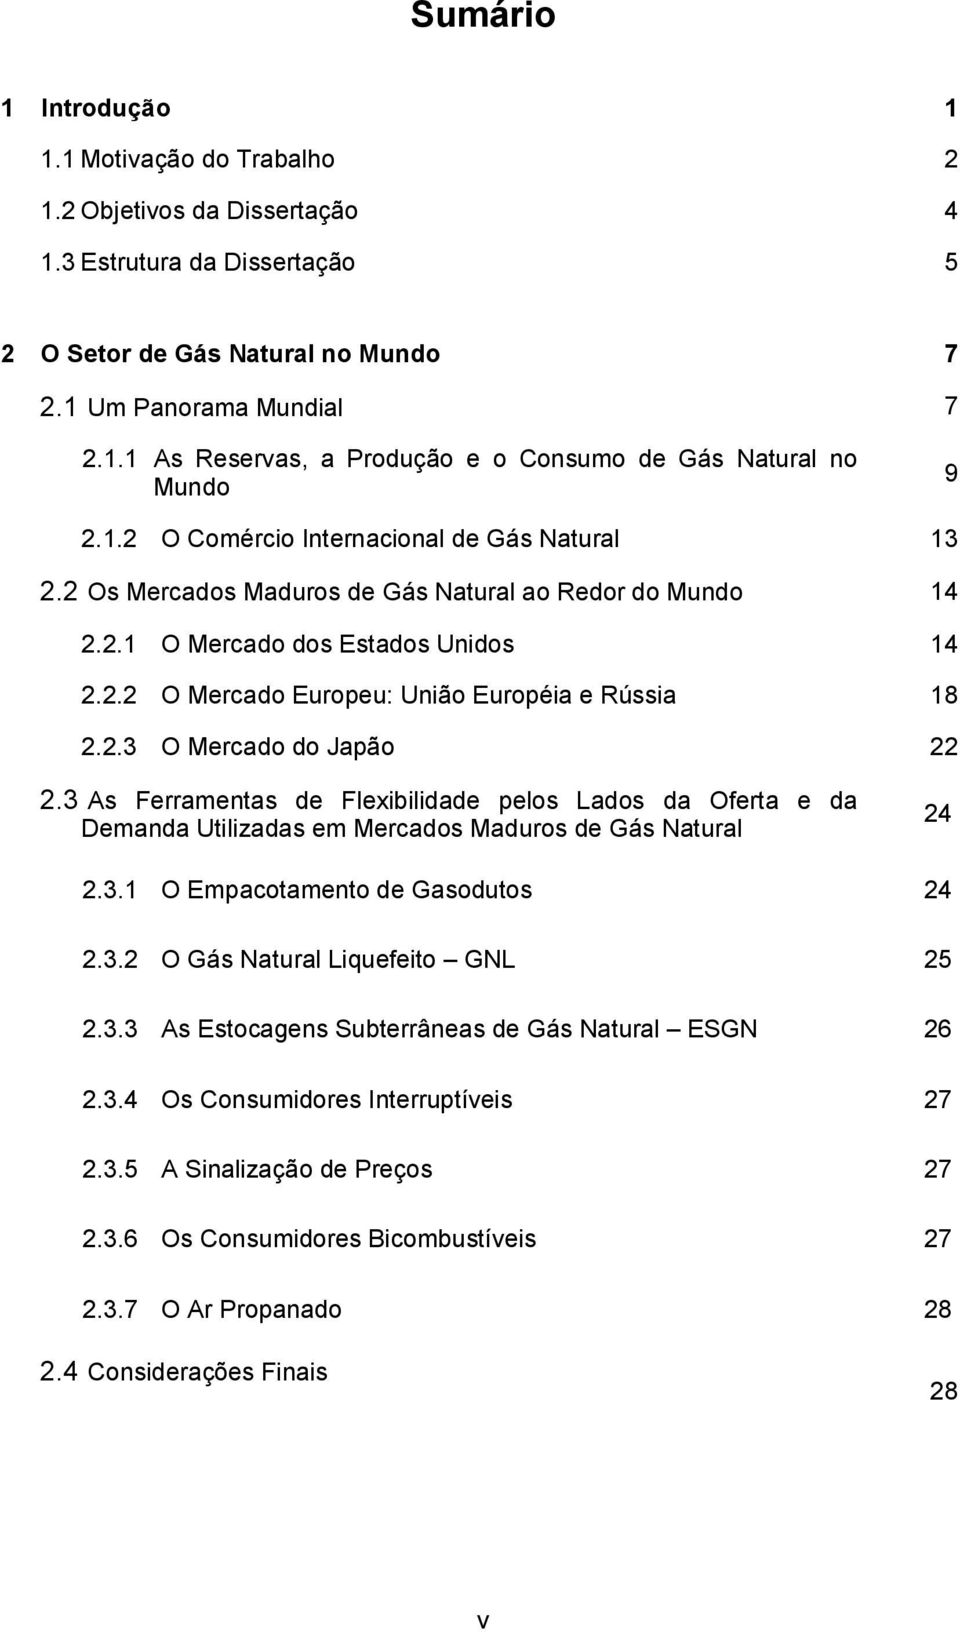 2.3 O Mercado do Japão 22 2.3 As Ferramentas de Flexibilidade pelos Lados da Oferta e da Demanda Utilizadas em Mercados Maduros de Gás Natural 24 2.3.1 O Empacotamento de Gasodutos 24 2.3.2 O Gás Natural Liquefeito GNL 25 2.